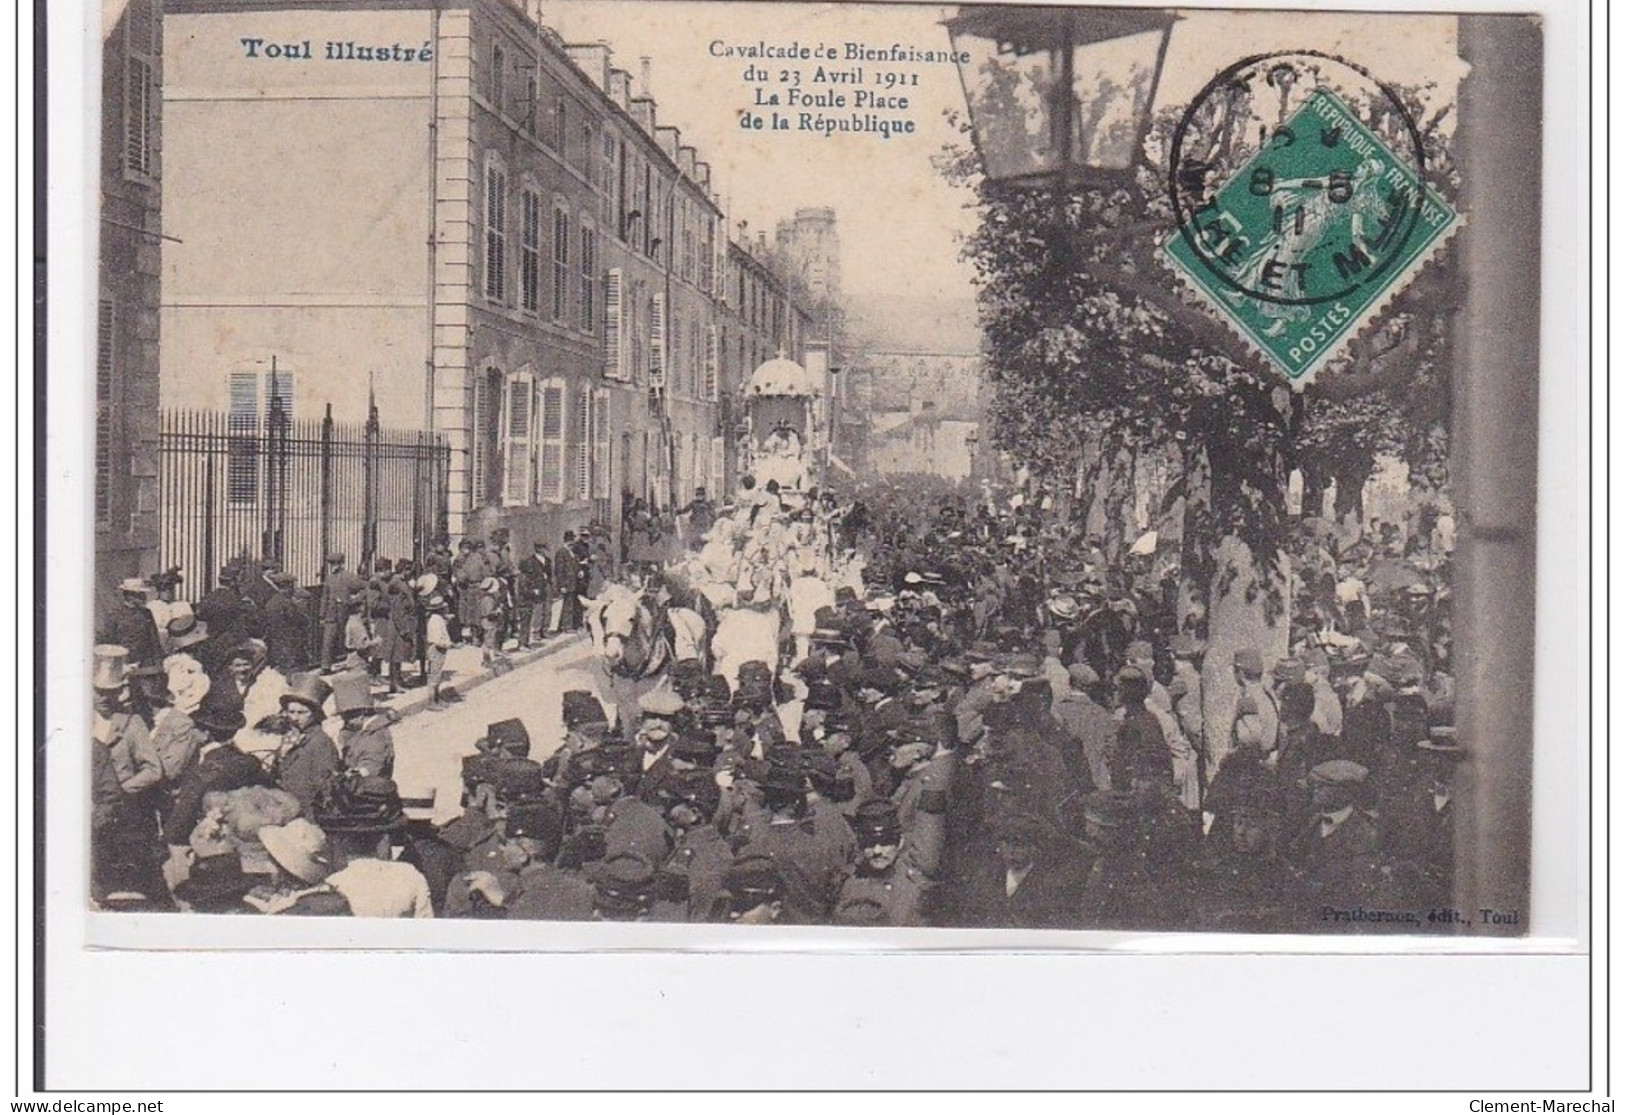 TOUL : Cavalcade Bienfaisance Du 23 Avril 1911, La Foule Place De La Republioque - Etat - Toul